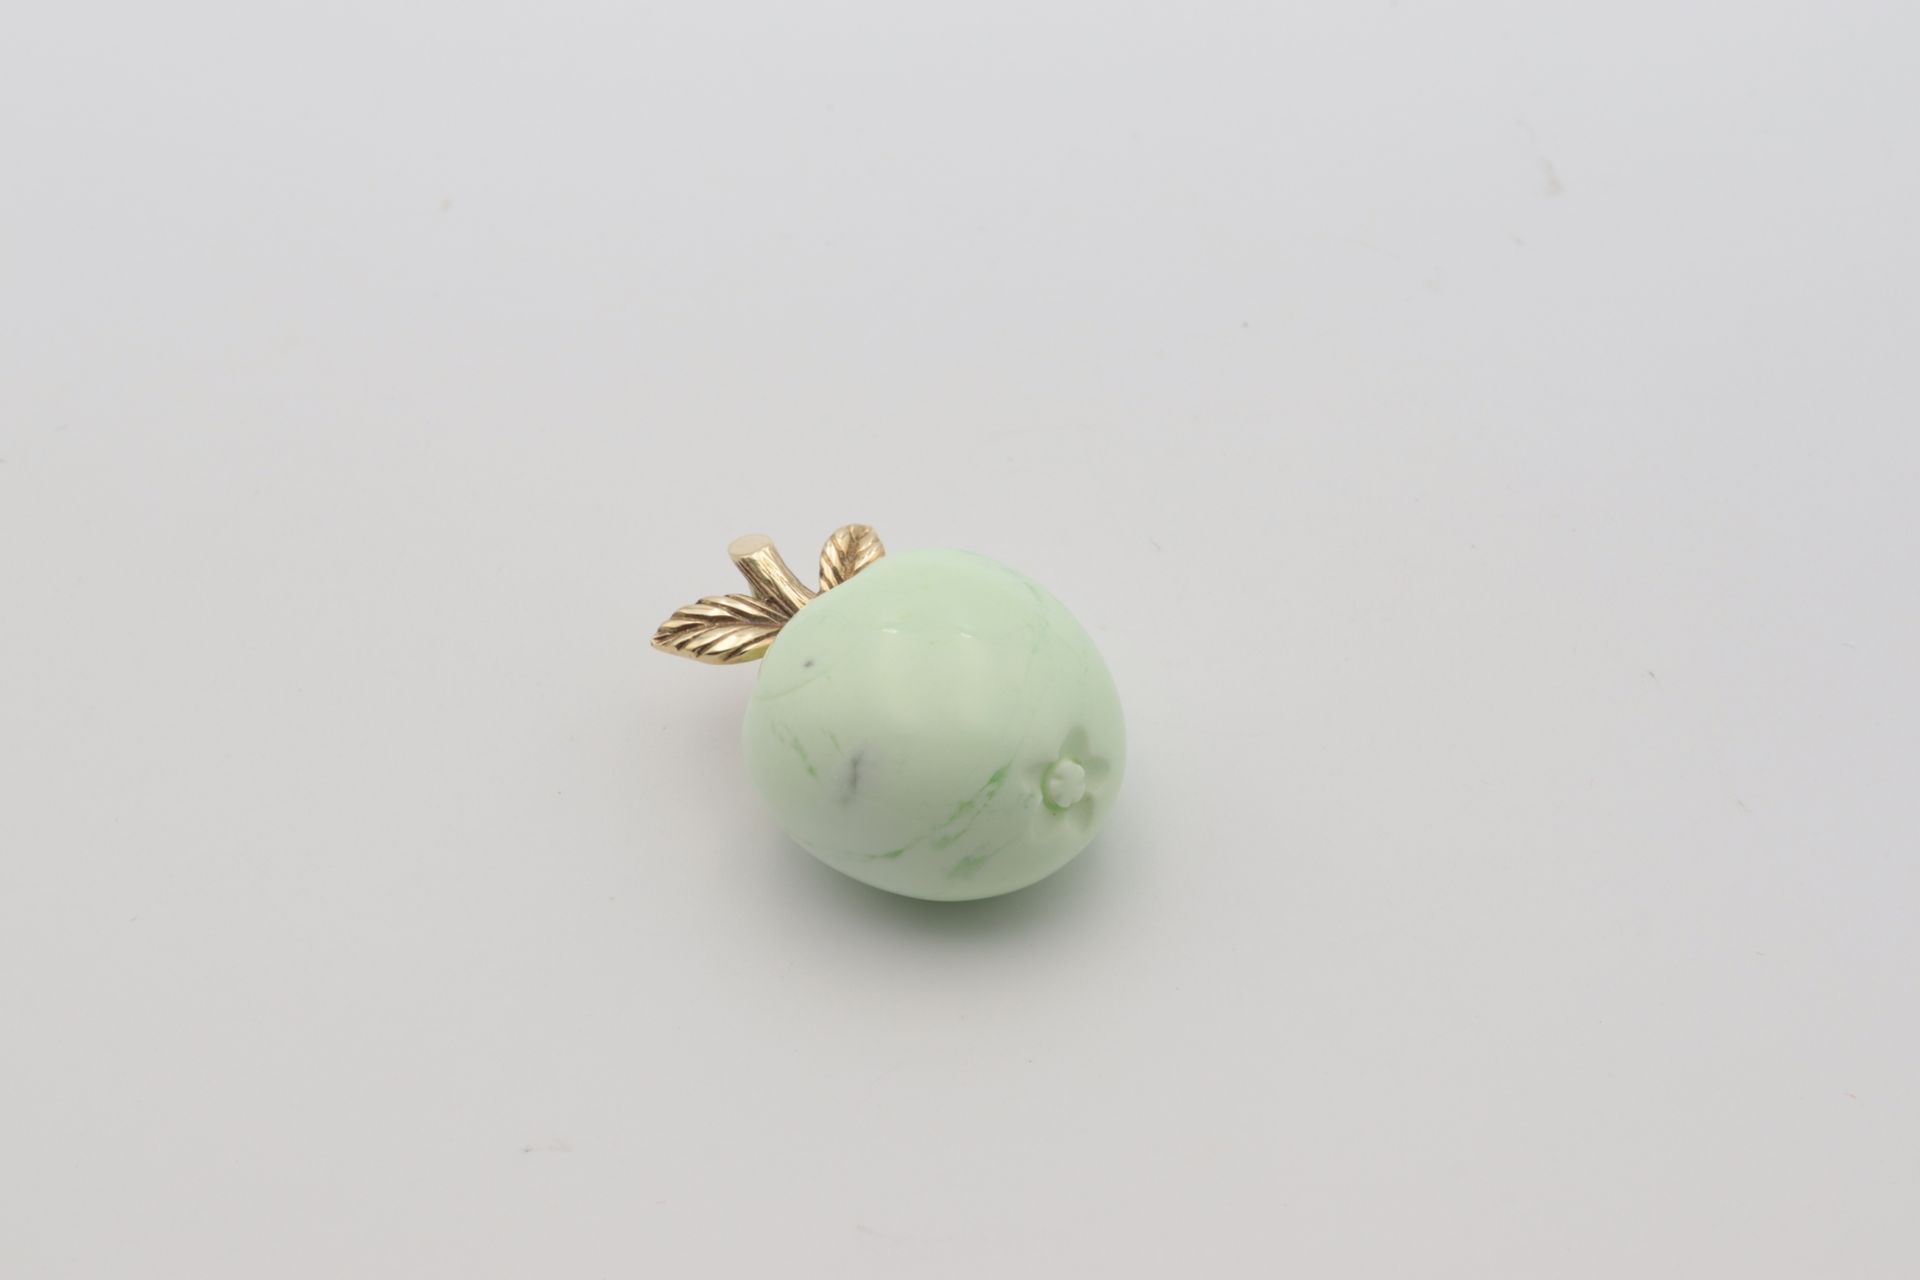 Anhänger - Jaspis fein ausgearbeiteter Apfel, aus mintgrünem Jaspis, mit blattförmi - Image 2 of 4